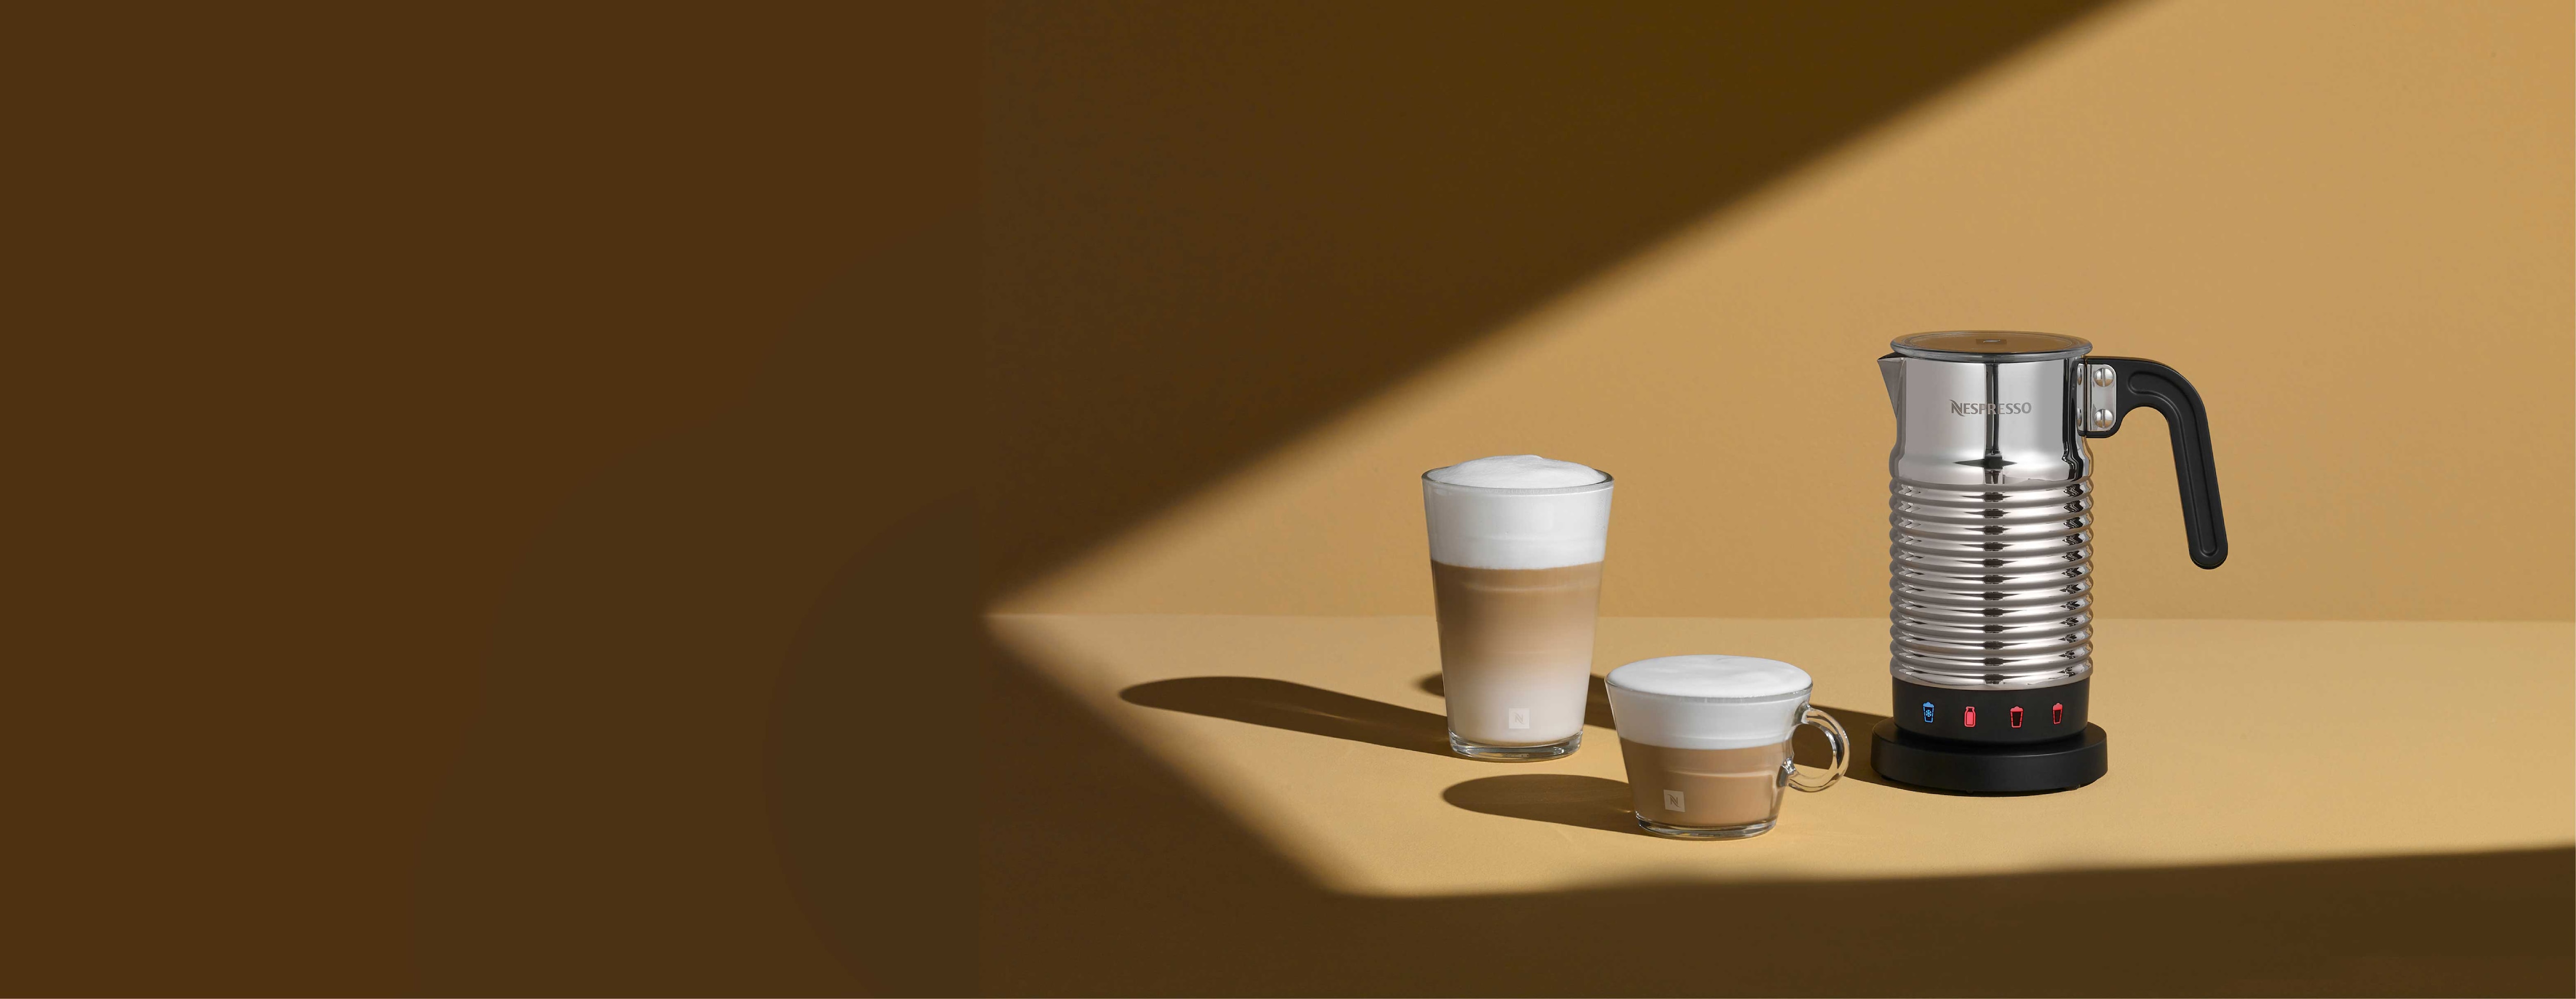 Nespresso Mousseur à lait Aeroccino 4 d'occasion – qcoffe